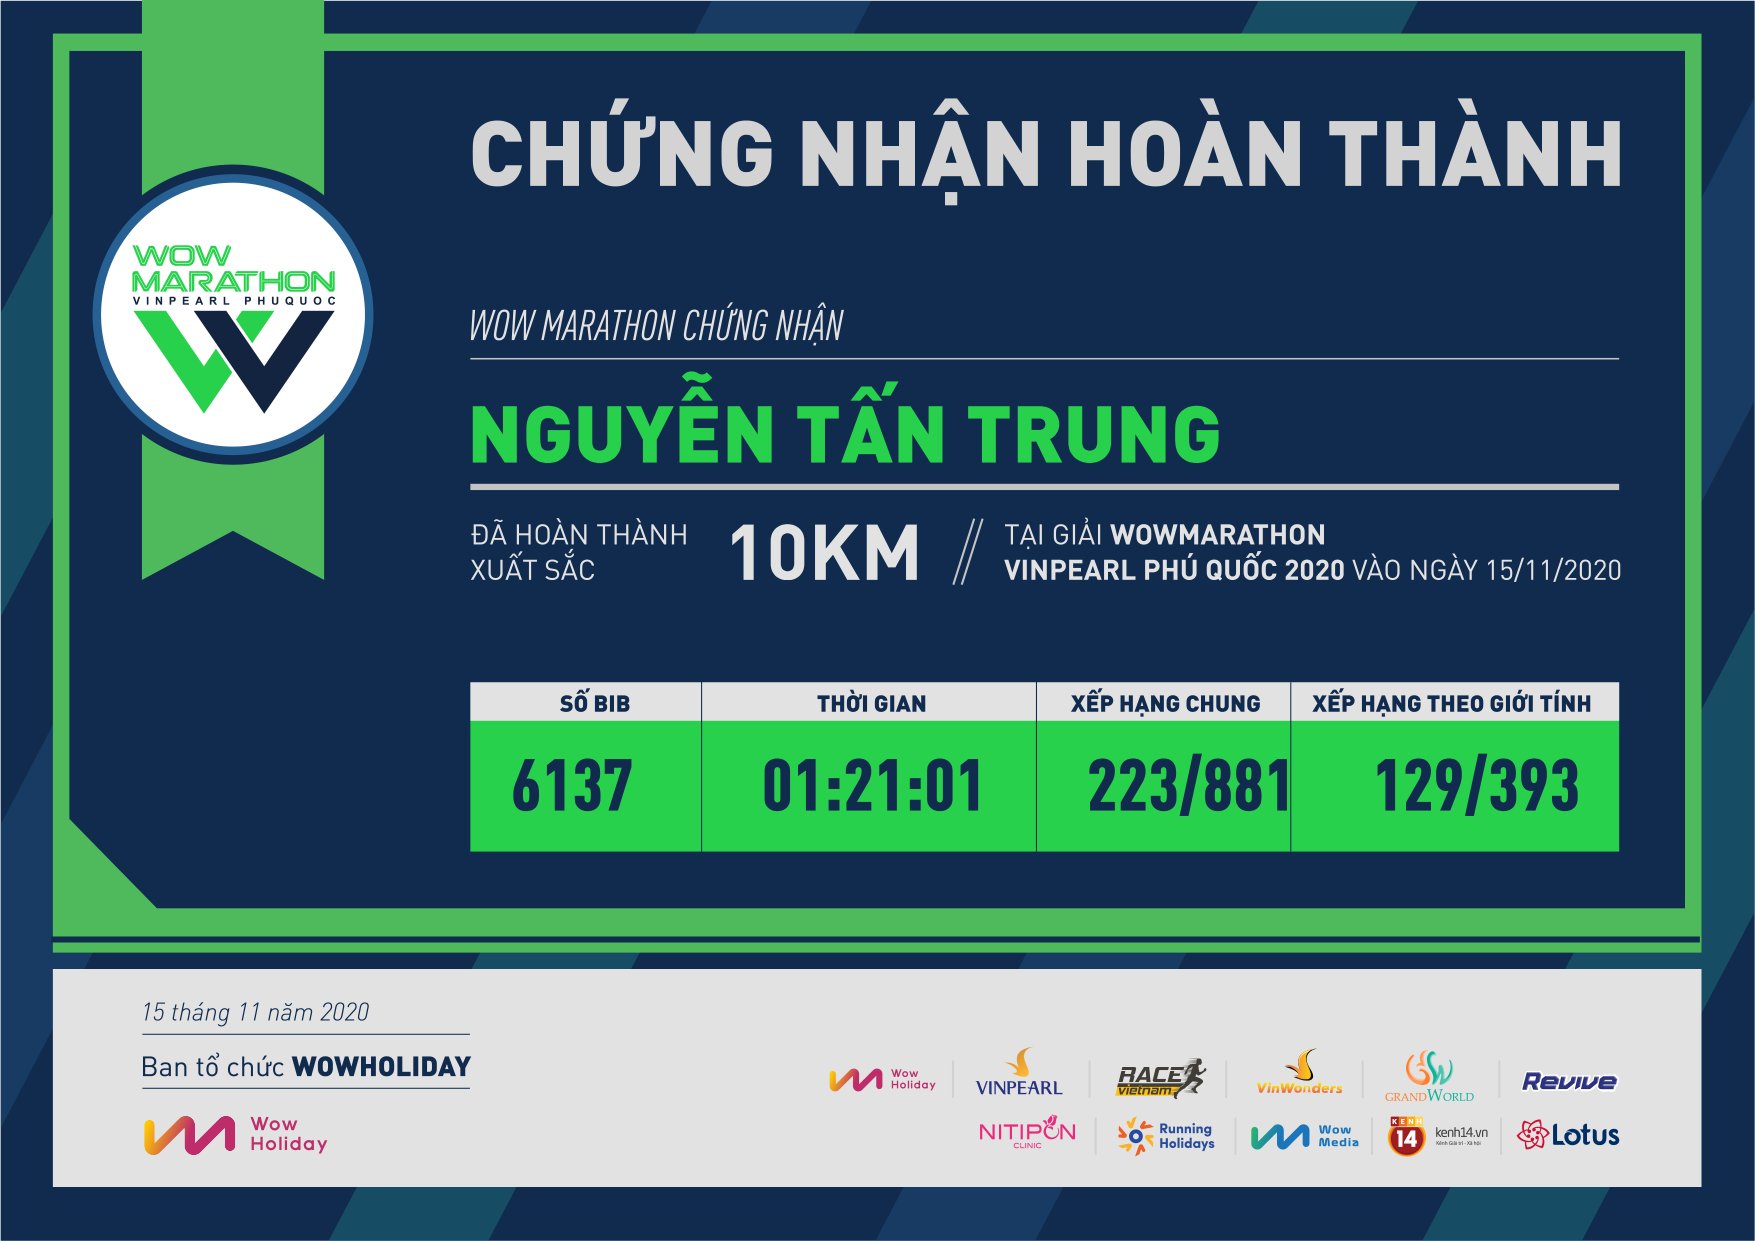 6137 - Nguyễn Tấn Trung